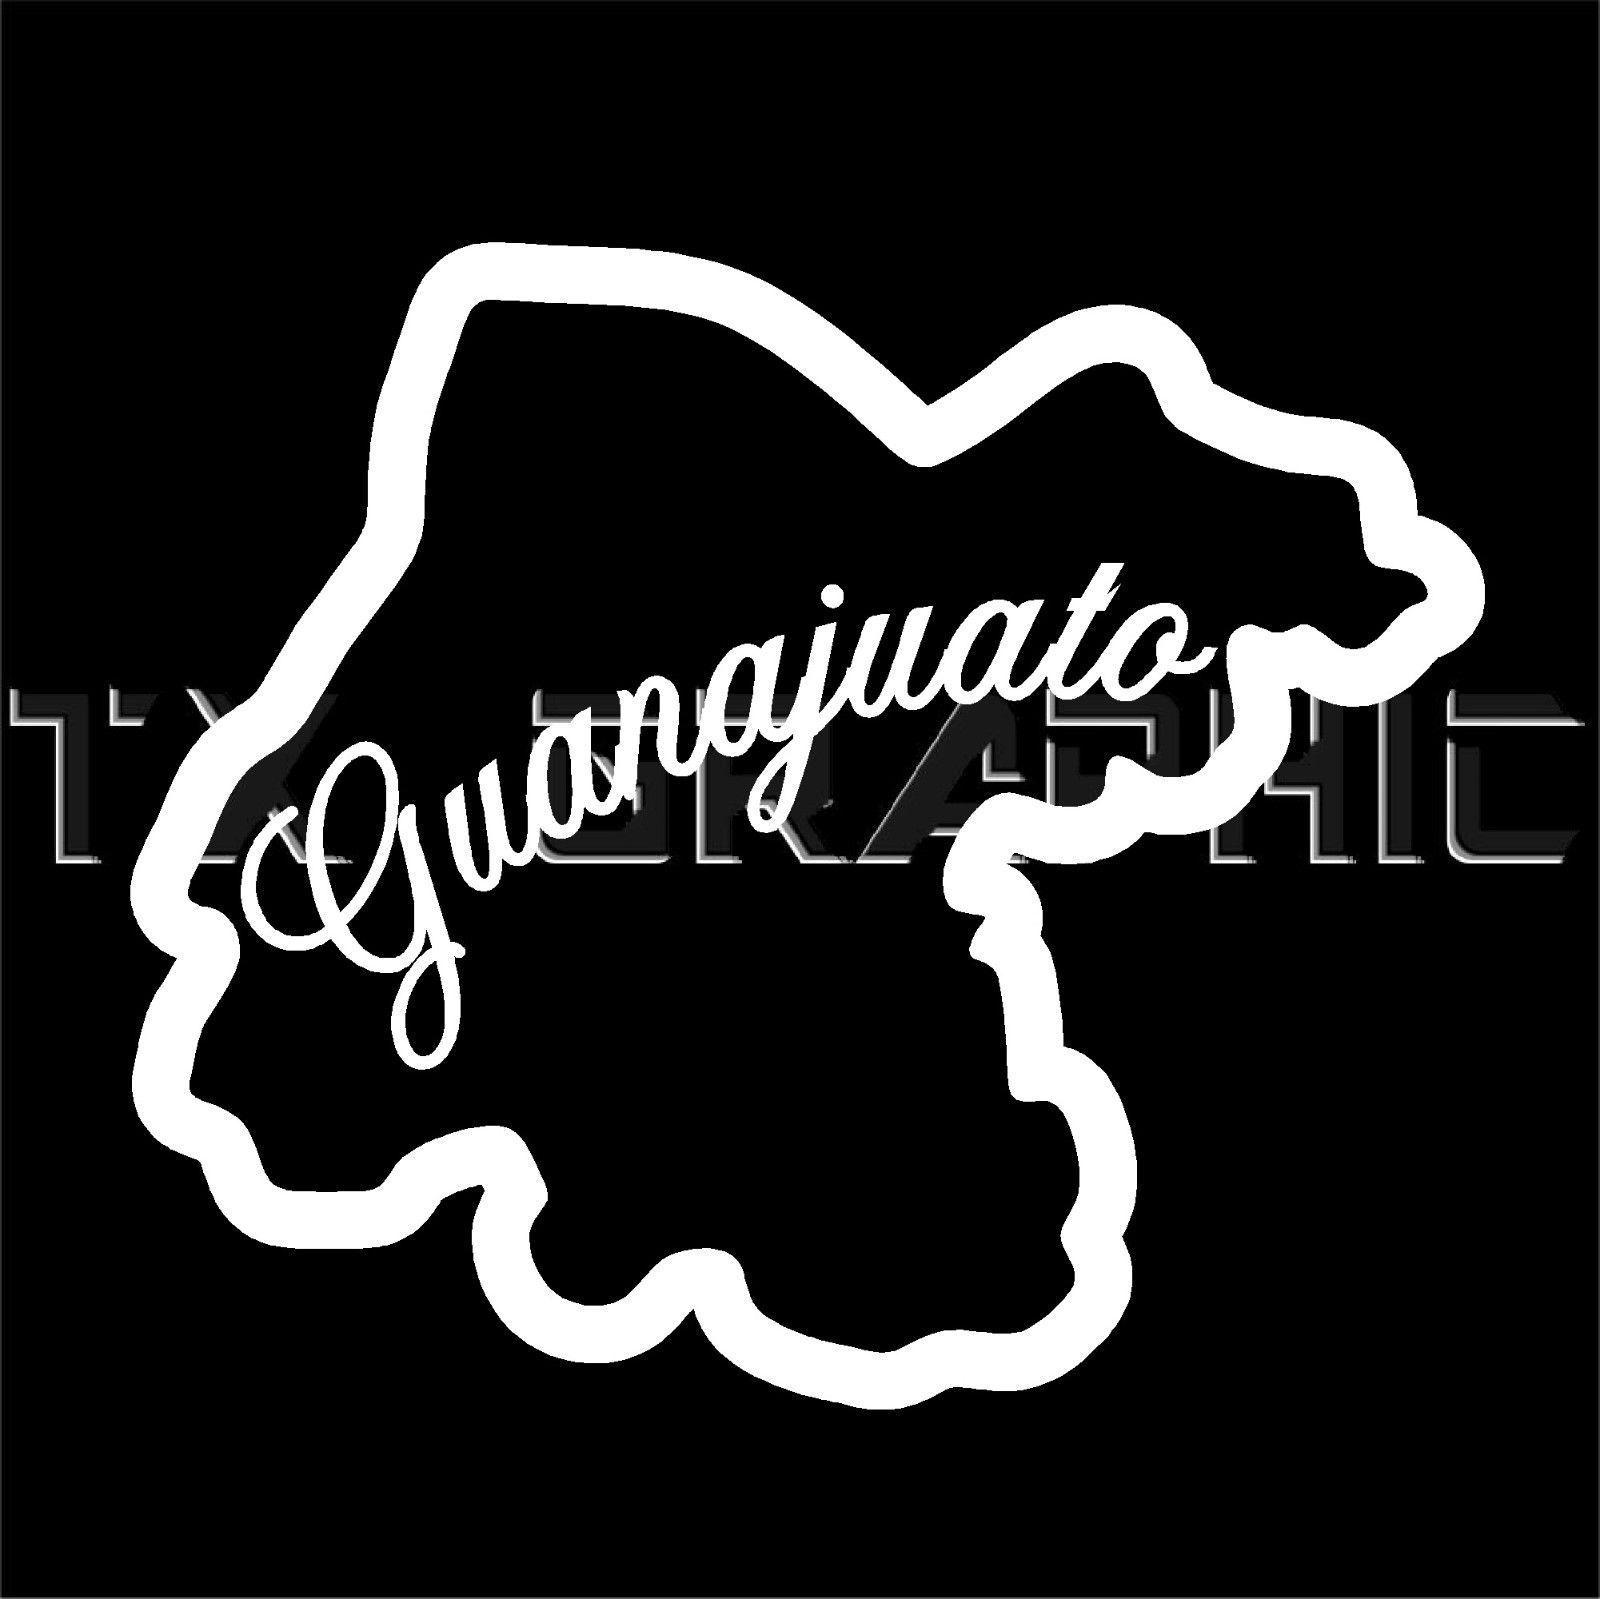 Guanajuato Logo - $5.45 - Guanajuato Mexico State Vinyl Decal Gto Sticker Window Body ...